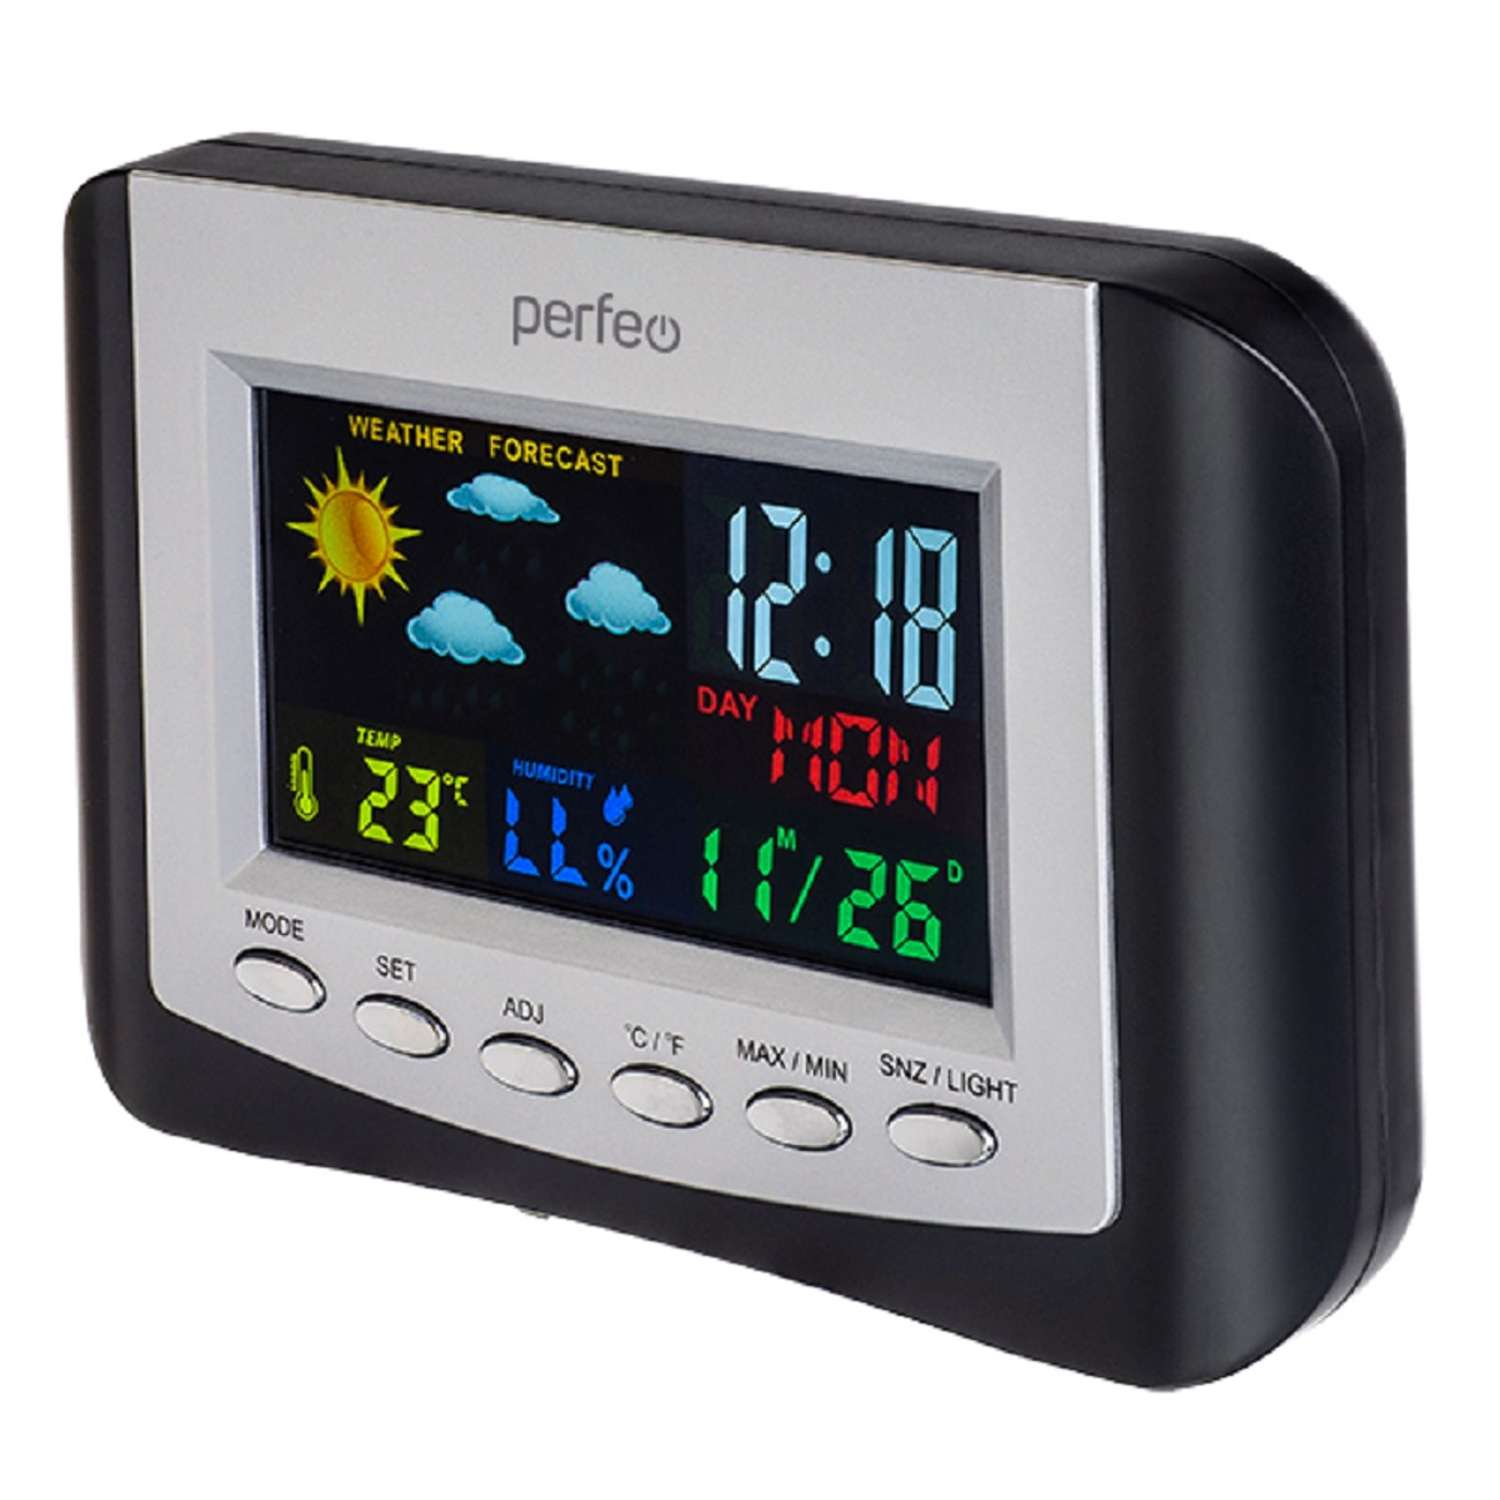 Часы-метеостанция Perfeo Сolor PF-S3332CS цветной экран время температура влажность дата - фото 1